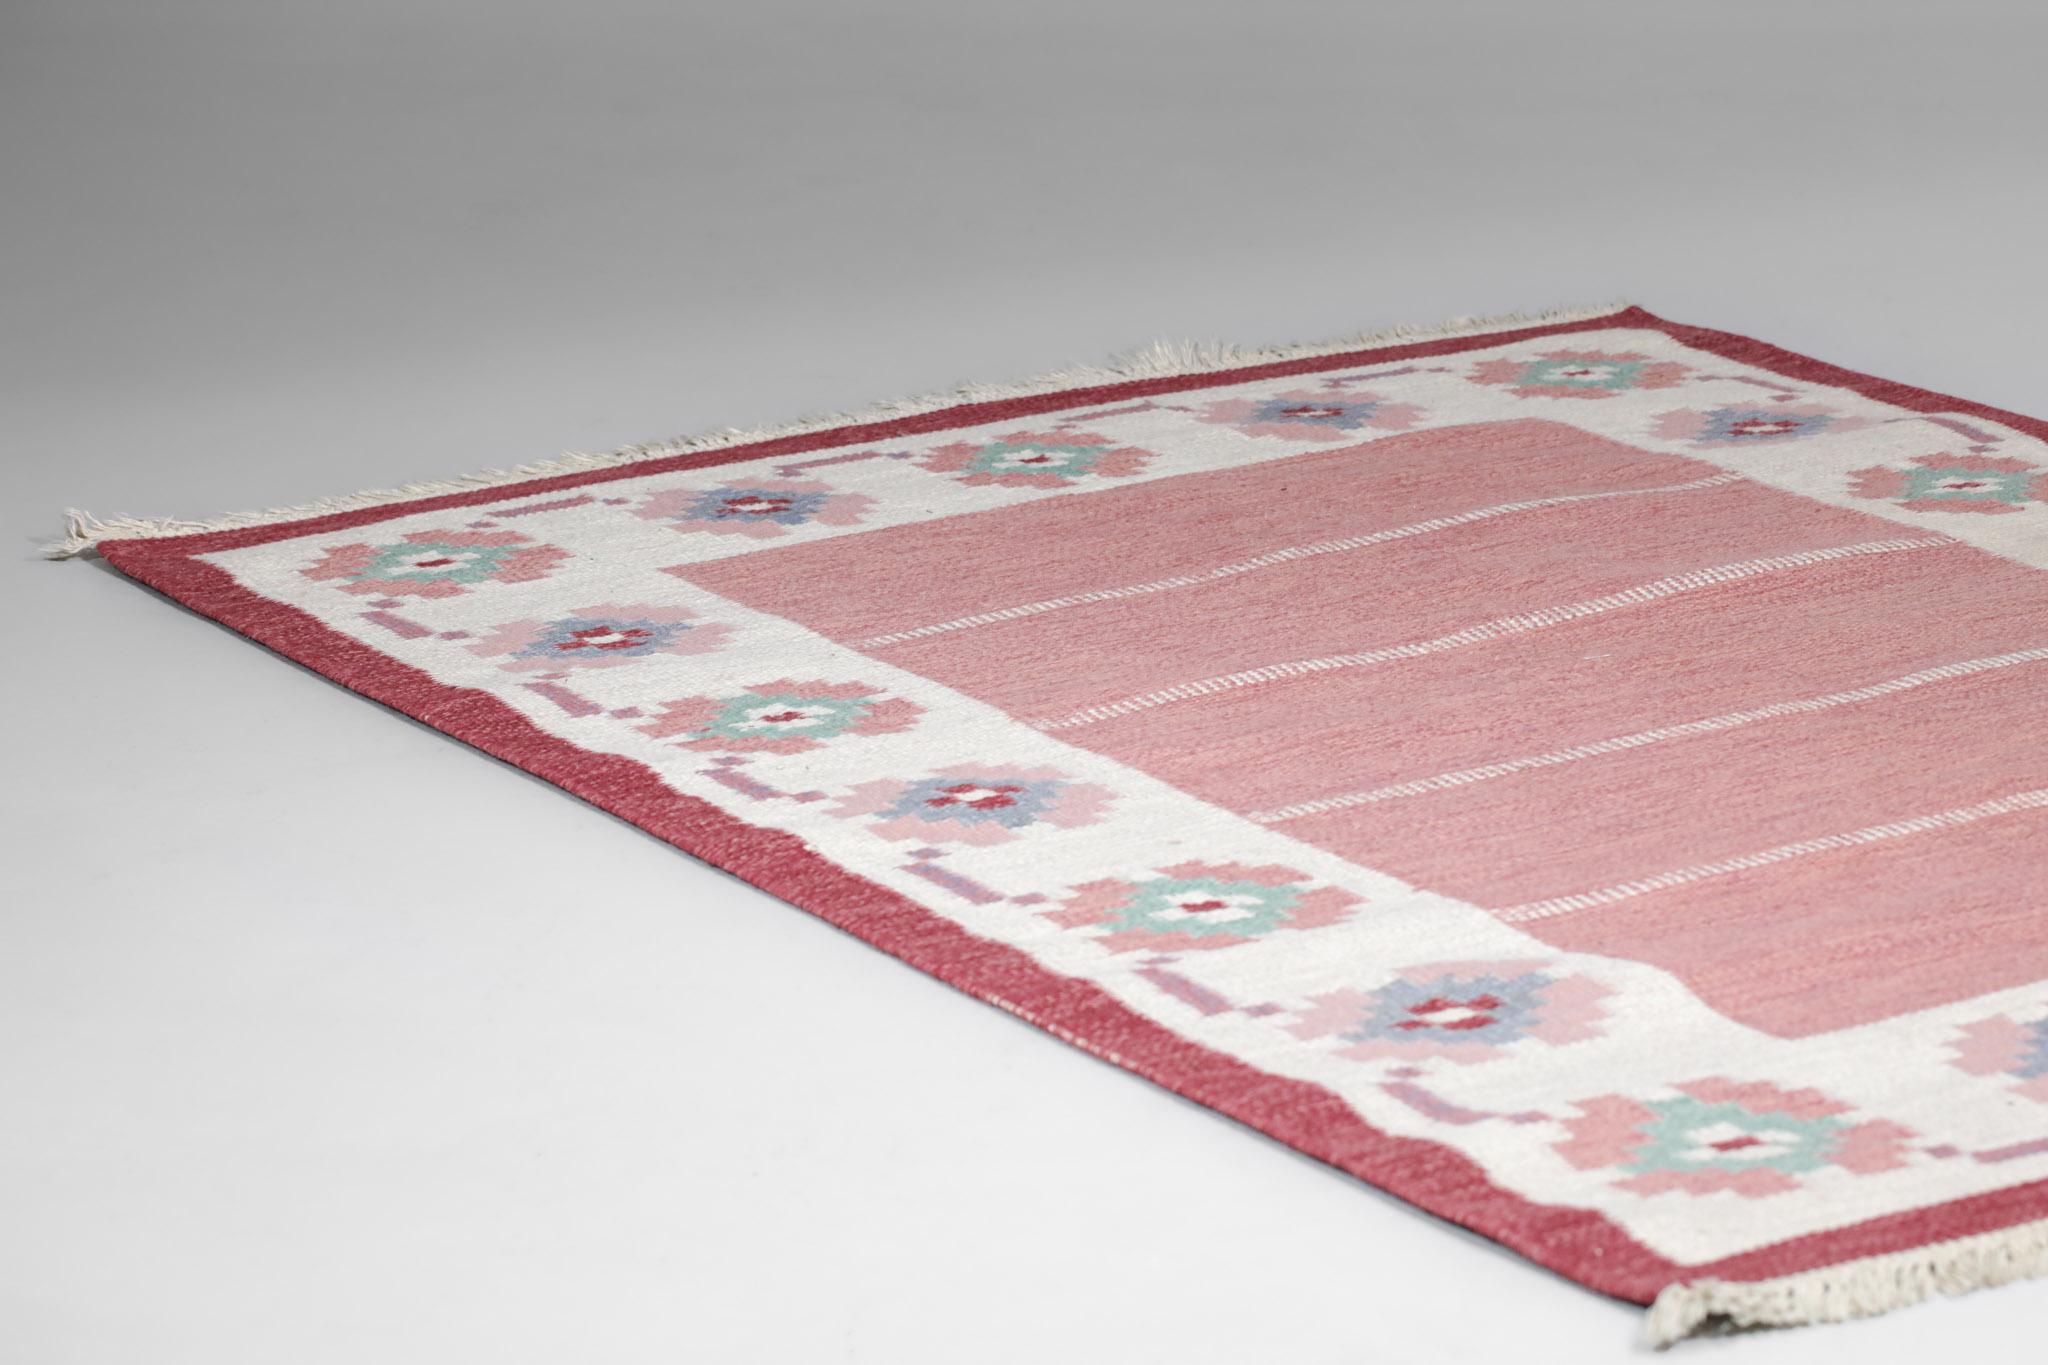 Très grand tapis scandinave des années 60. Technique de tissage à plat (rillakan), laine sur lin. Motifs géométriques traditionnels dans les couleurs rose, blanc et bleu. Tissé à la main en Suède dans les années 50 et 60. Excellent état vintage